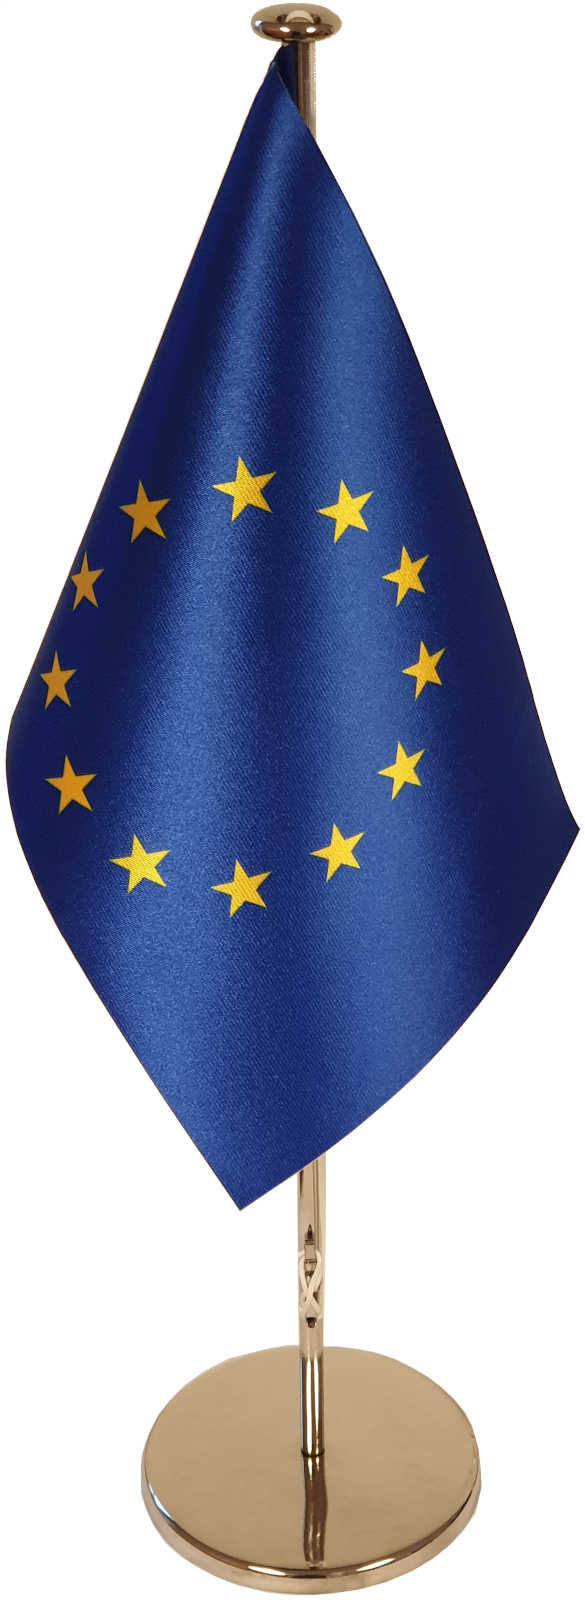 Tischflaggenständer Chrom komplett mit Tischflagge Europa